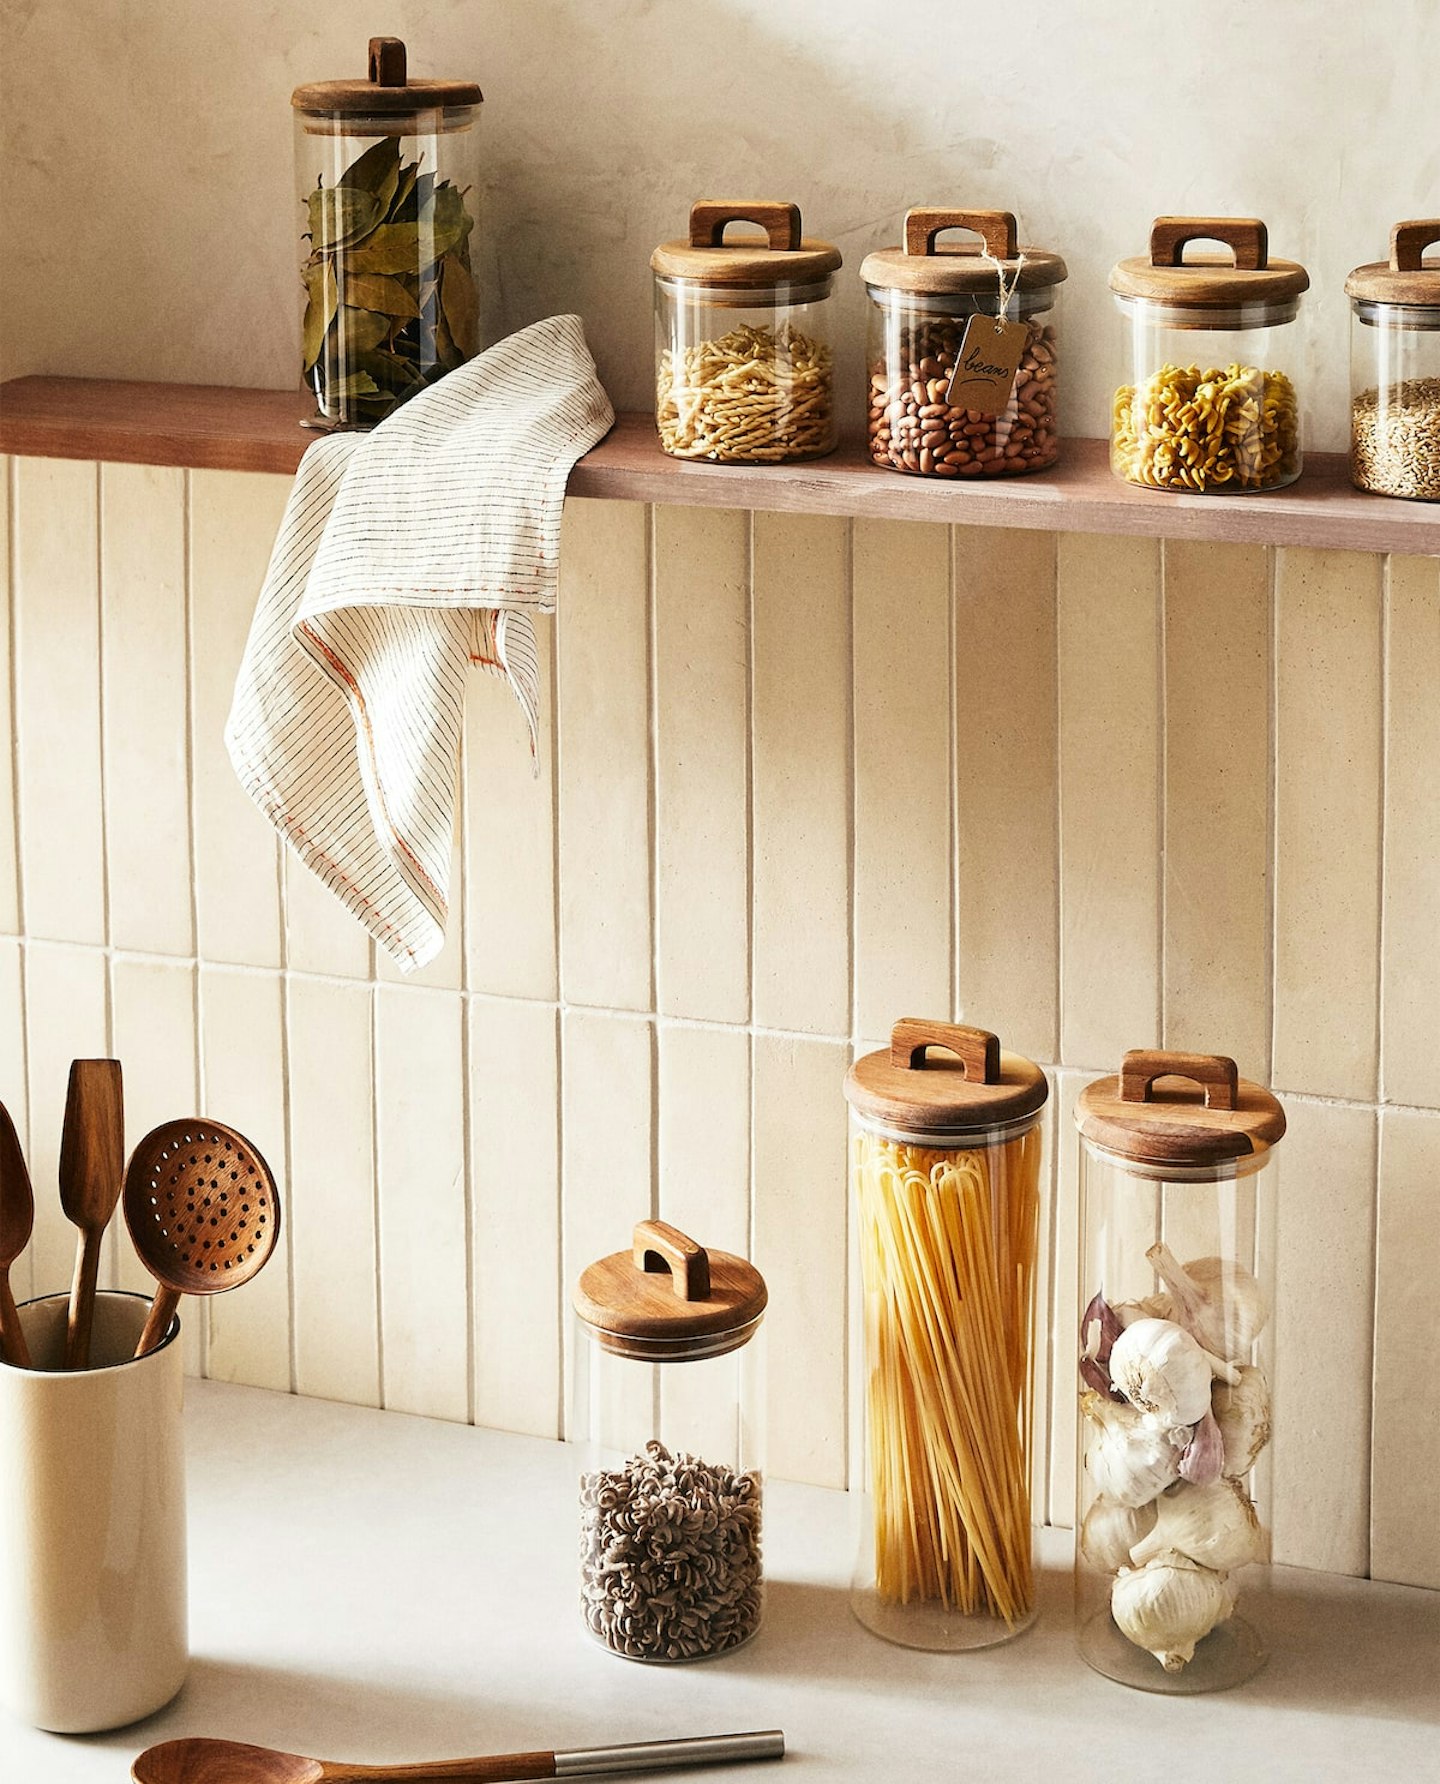 kitchen storage organisation ideas - jars